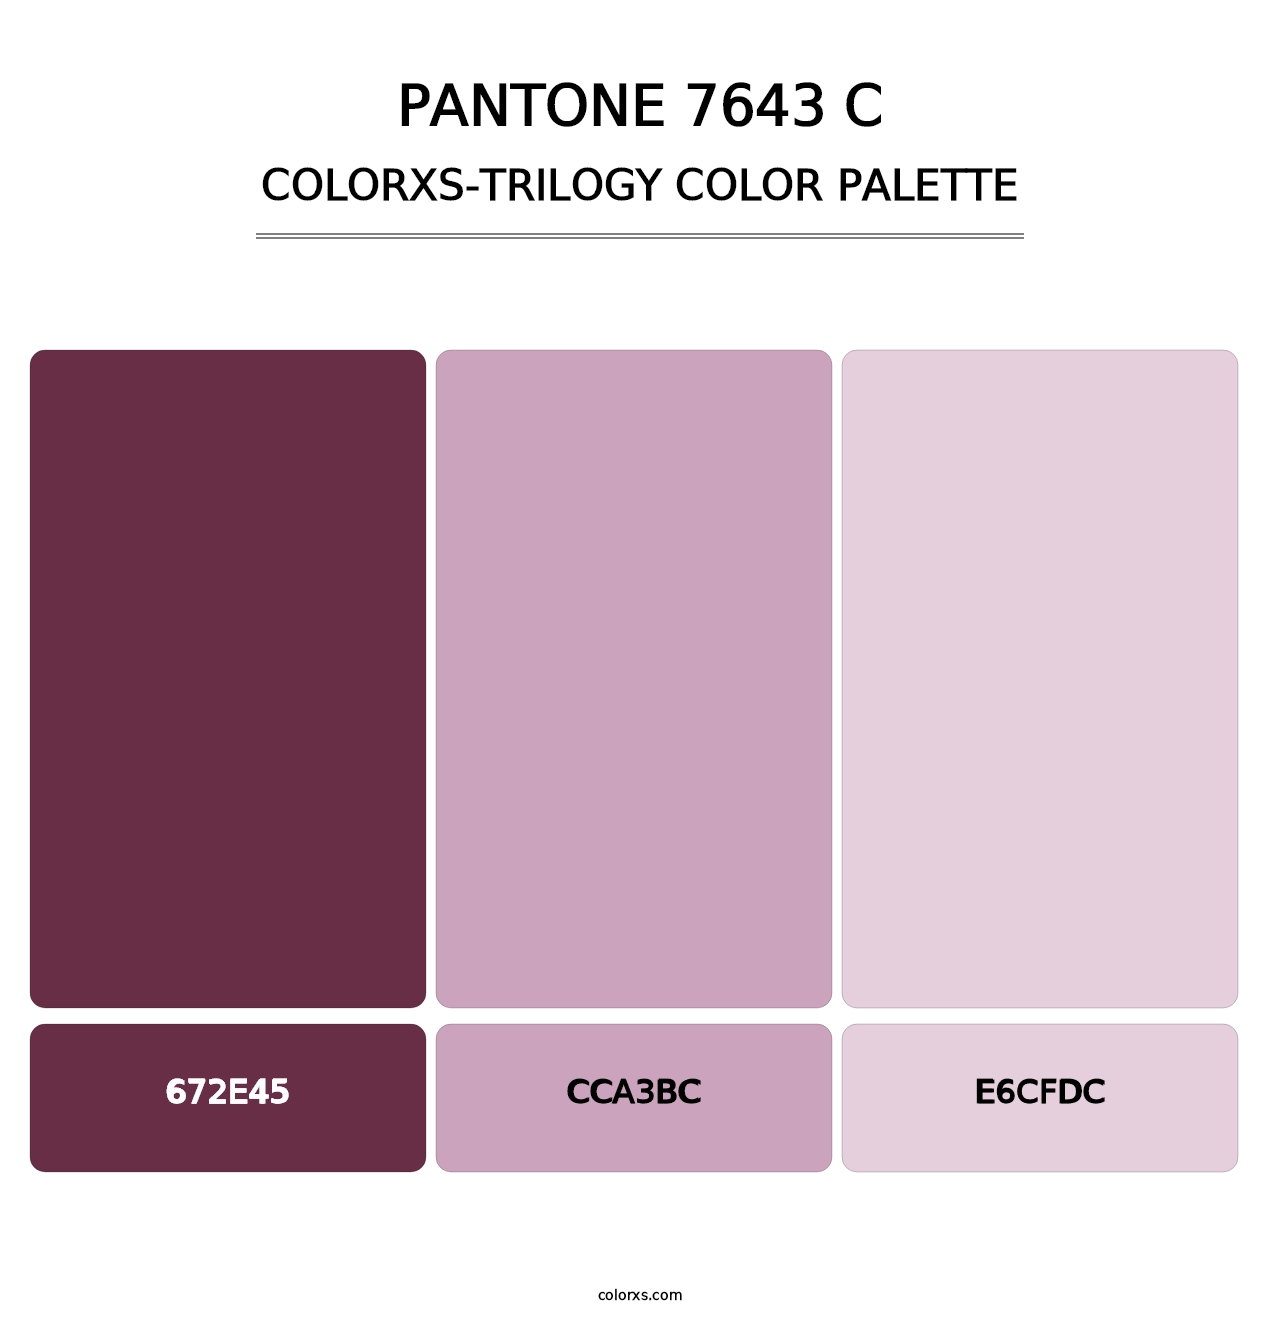 PANTONE 7643 C - Colorxs Trilogy Palette